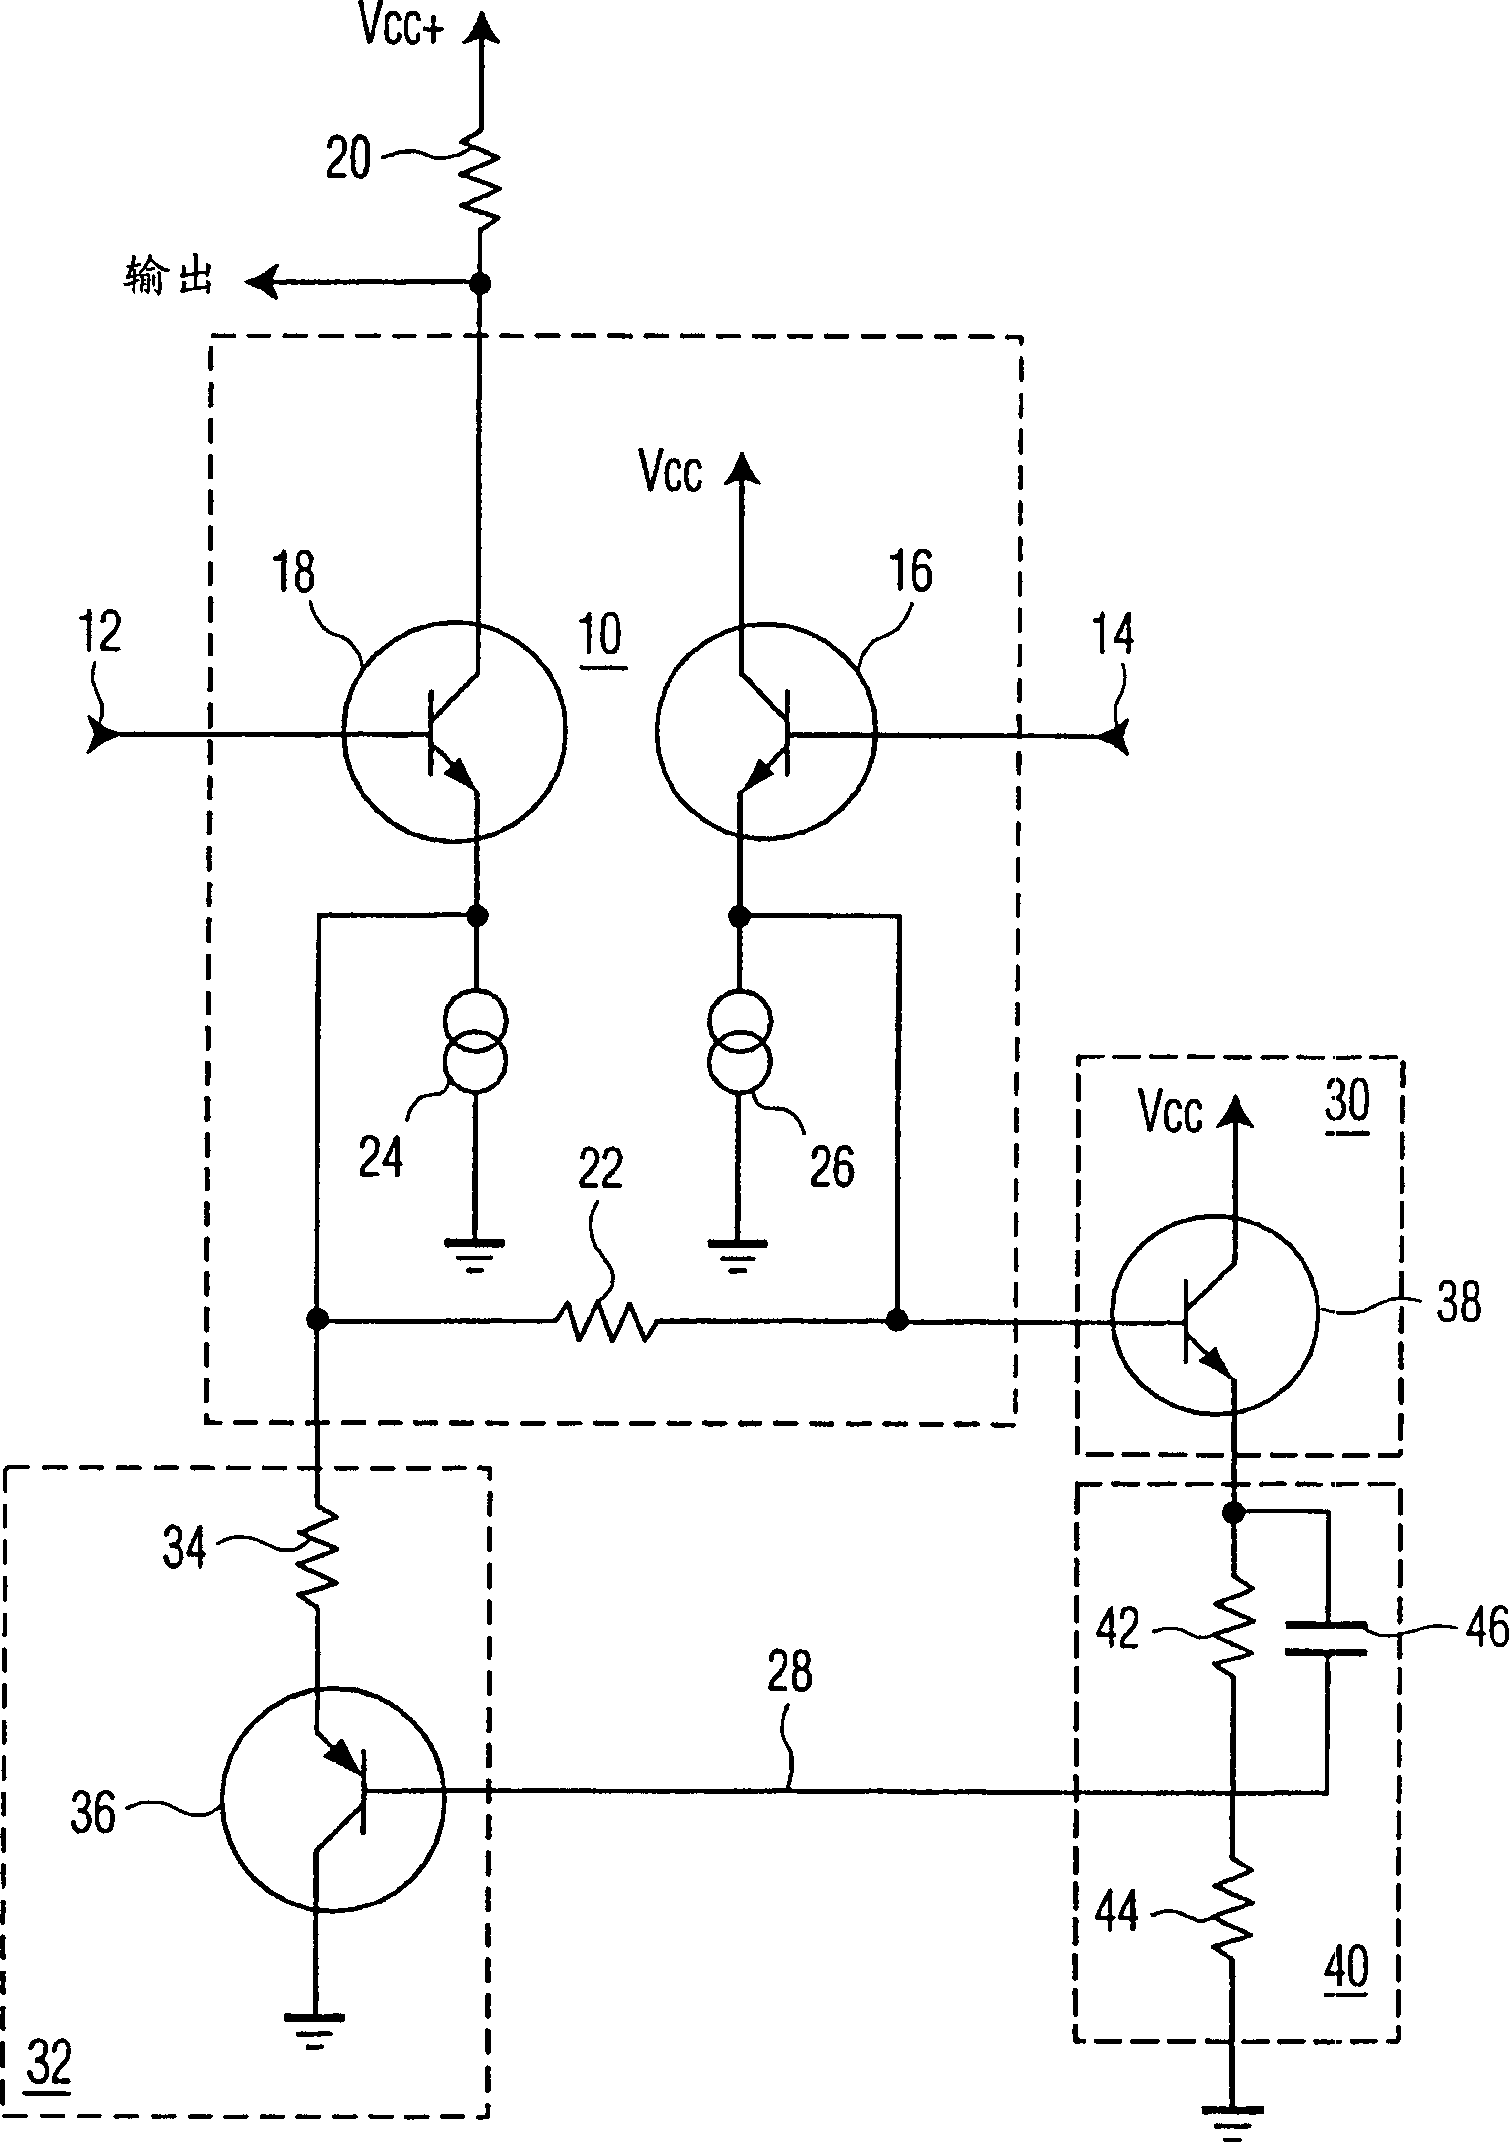 Non-linear signal processor